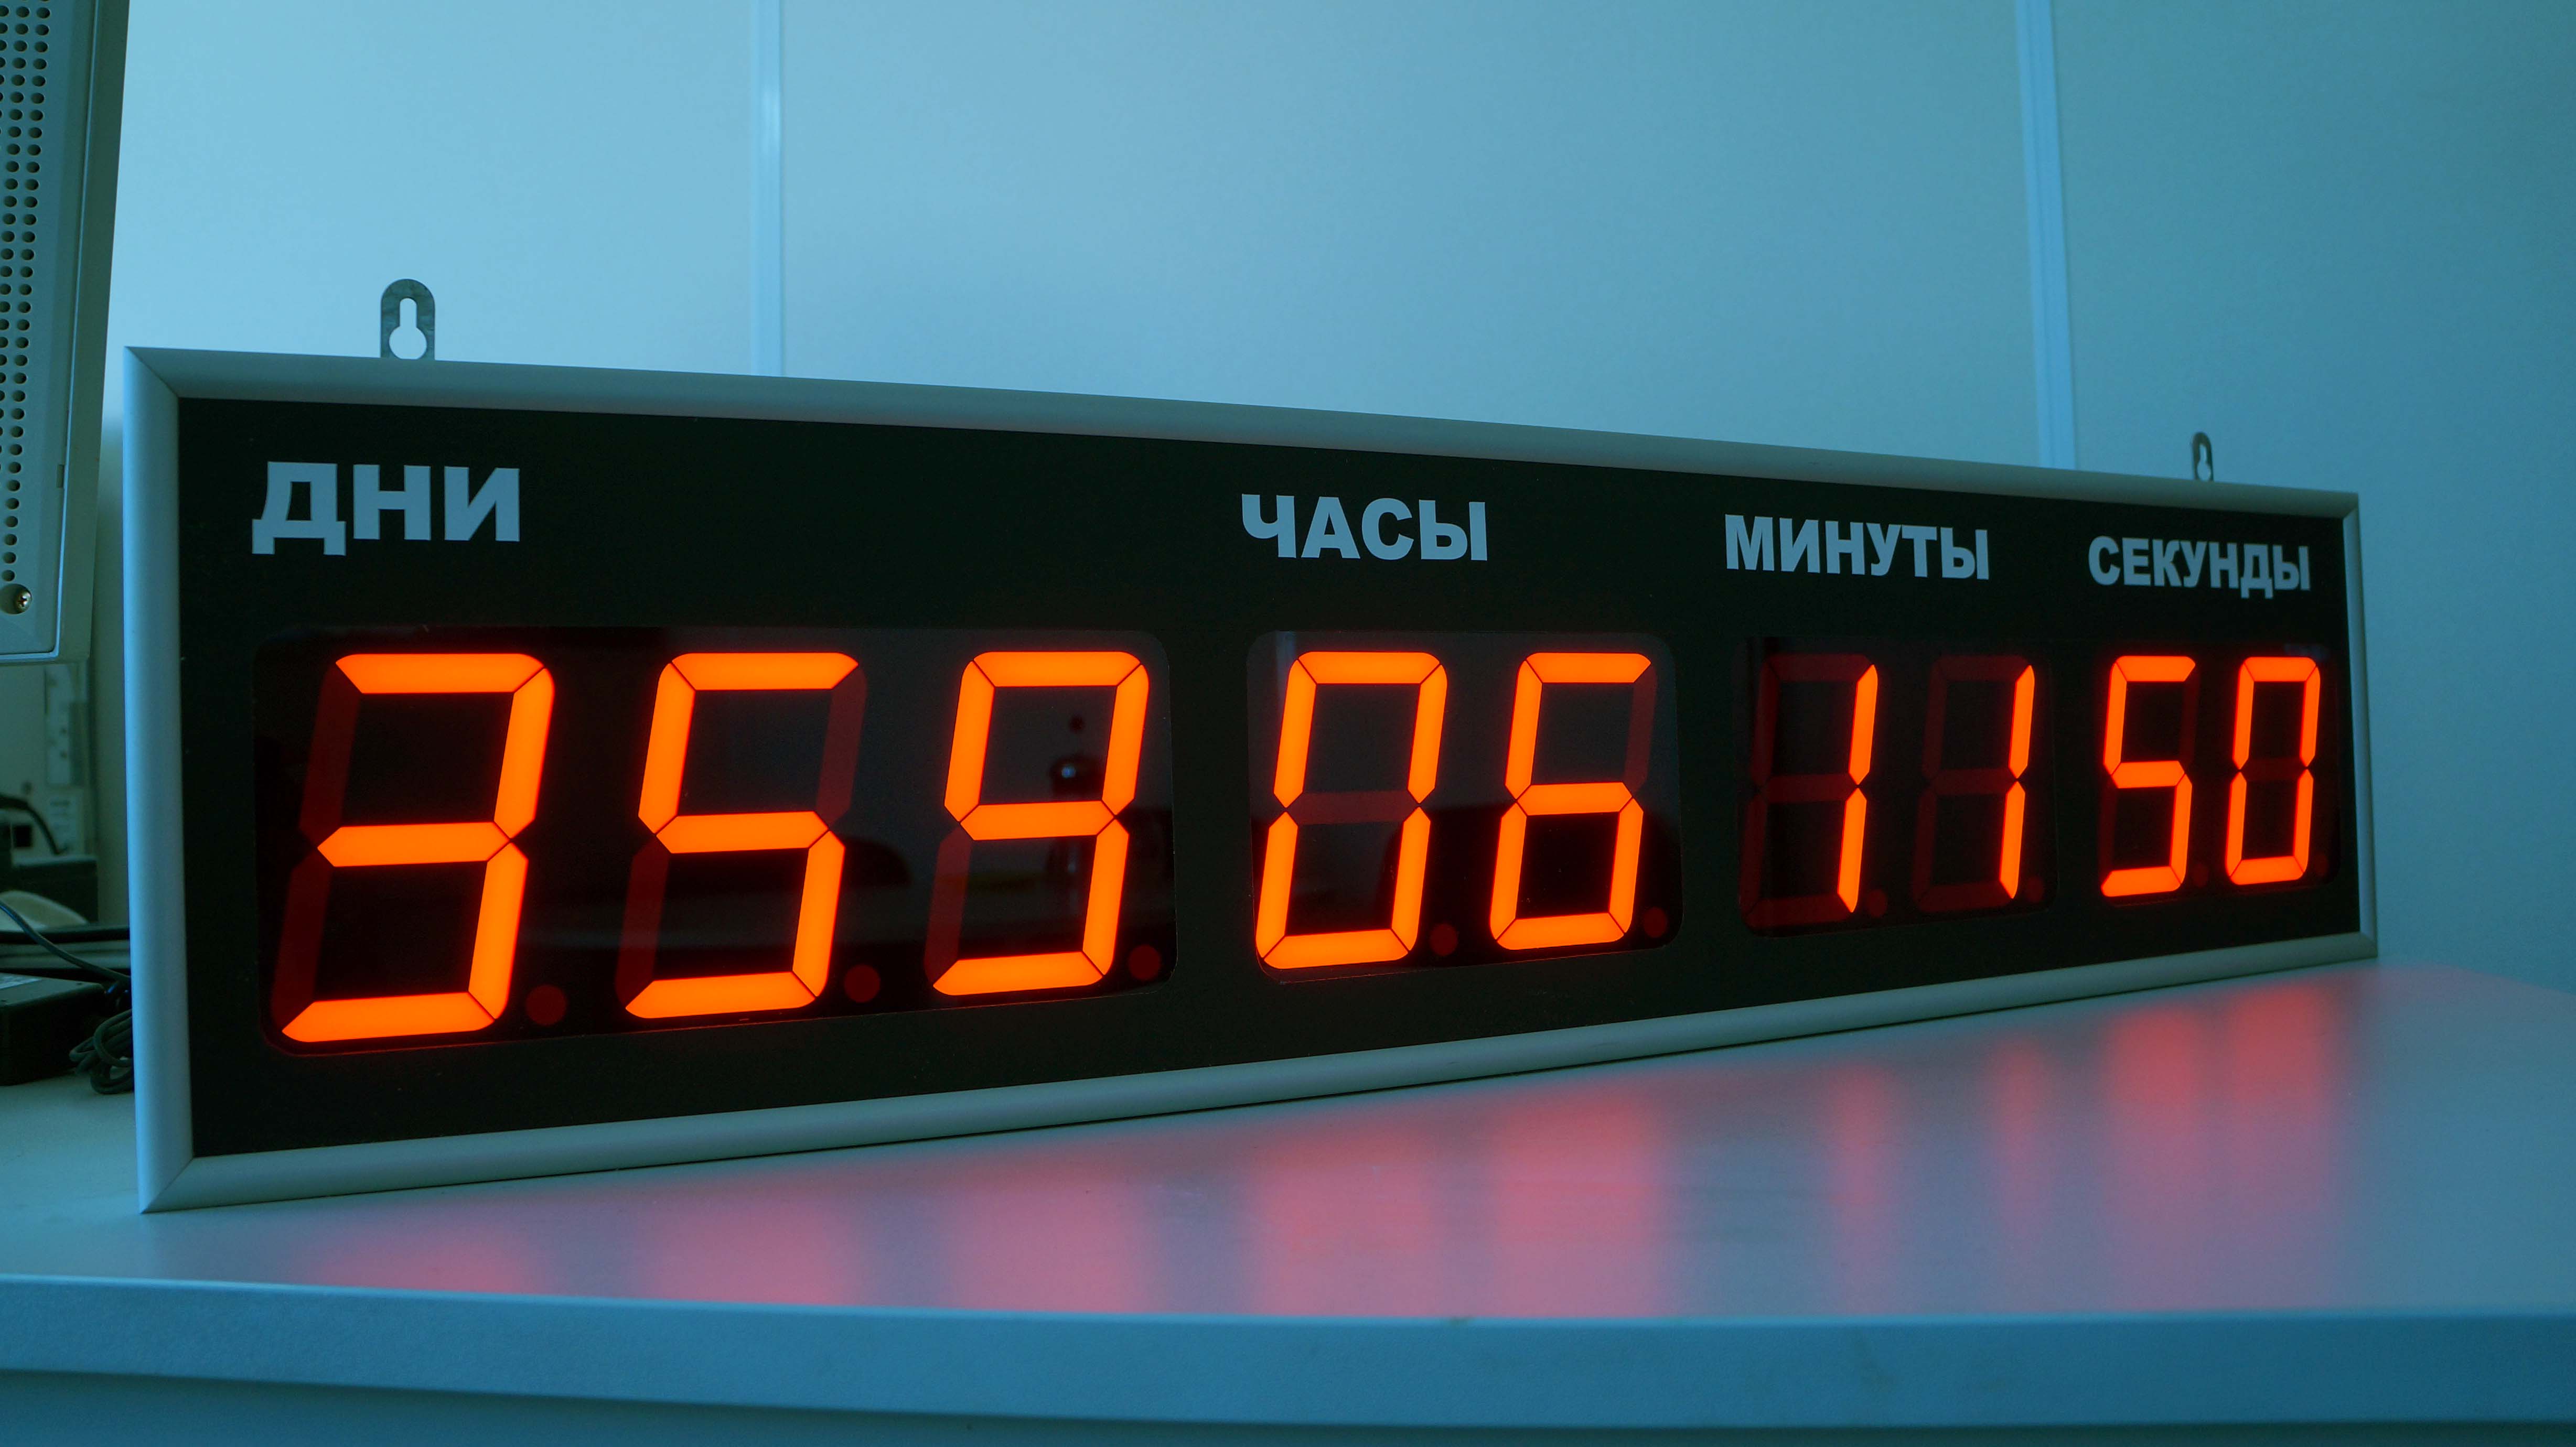 Московское время электронные. 70-0530 Rexant цифровые часы с таймером обратного отсчета RX-100а. Электронные часы интеграл Чэ-01 с ЖК дисплеем. Табло с таймером обратного отсчета. Часы настенные электронные.